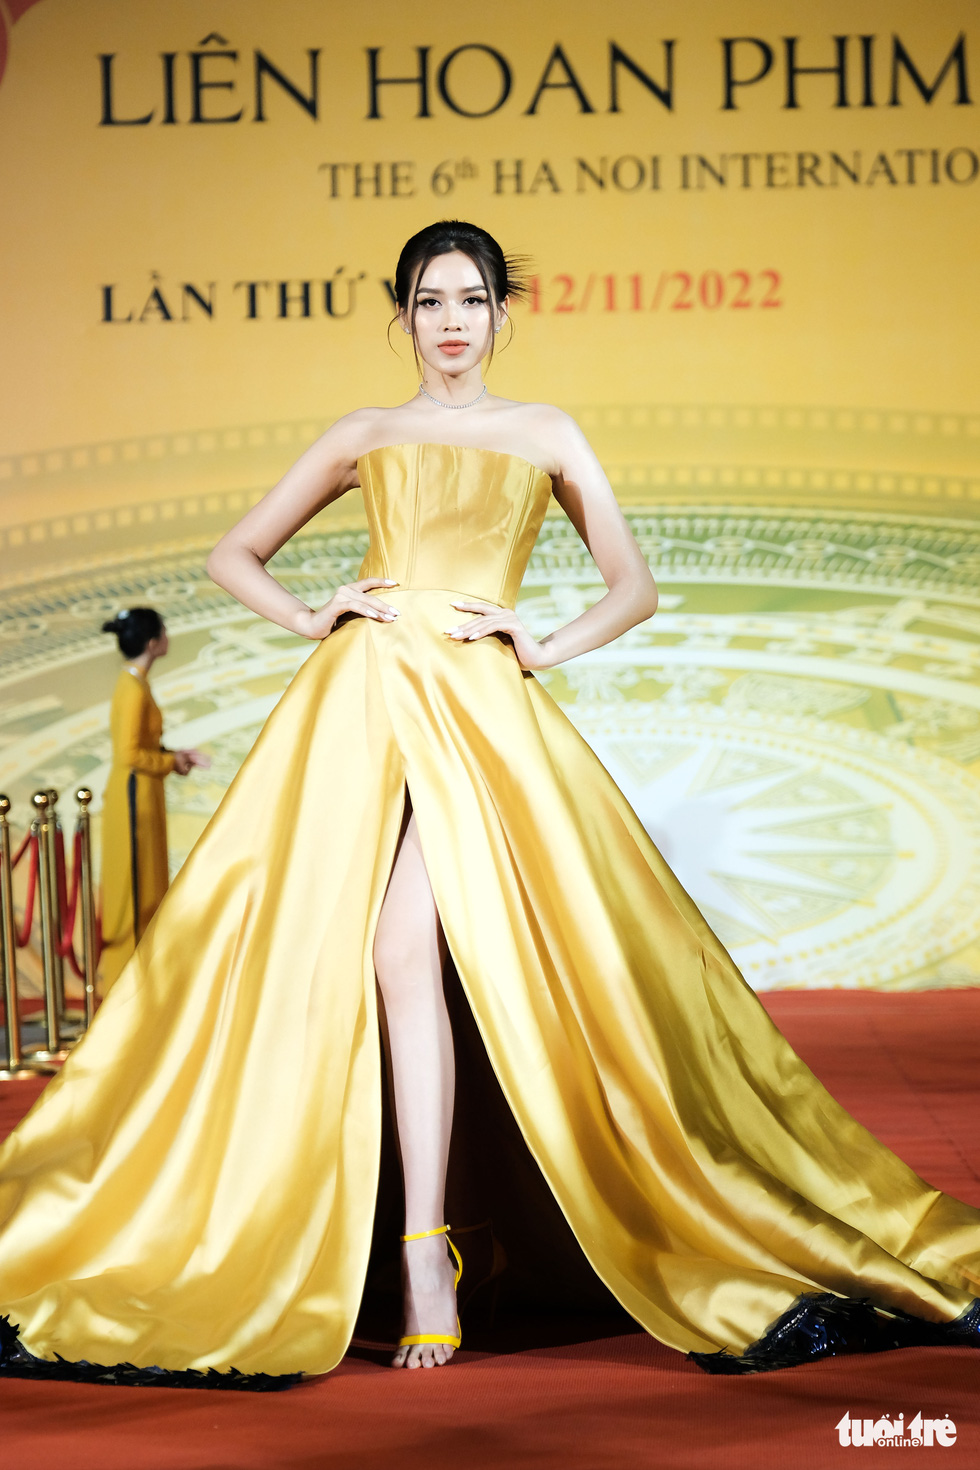 Dàn sao Việt dự thảm đỏ Liên hoan phim quốc tế Hà Nội - Ảnh 6.